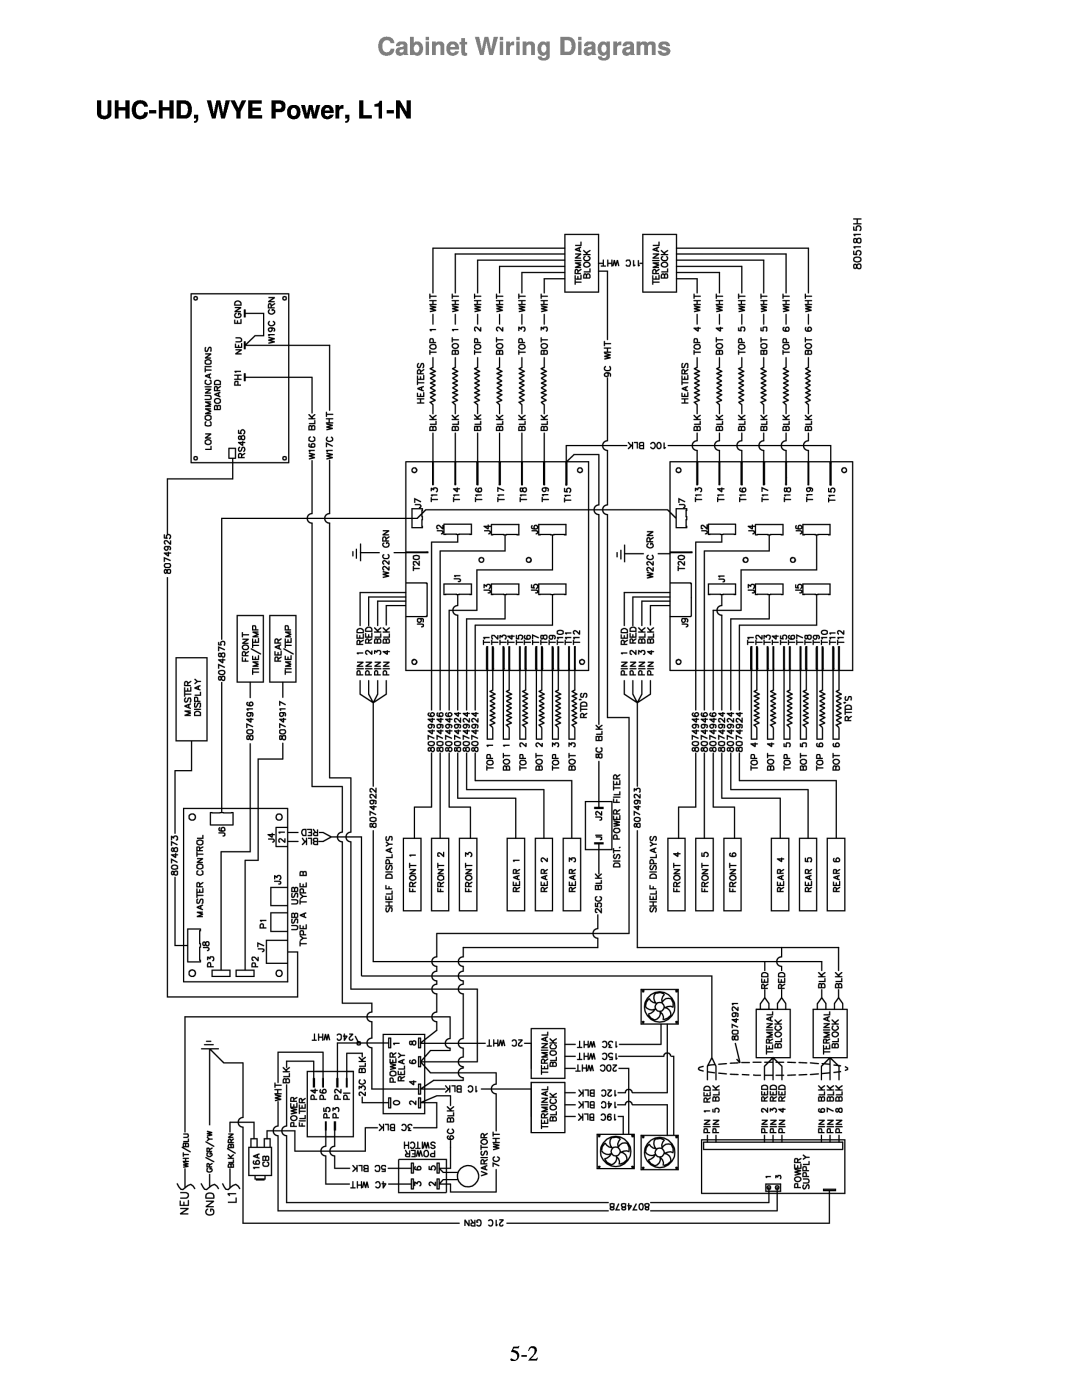 Frymaster 8196606 manual UHC-HD,WYE Power, L1-N, Cabinet Wiring Diagrams 